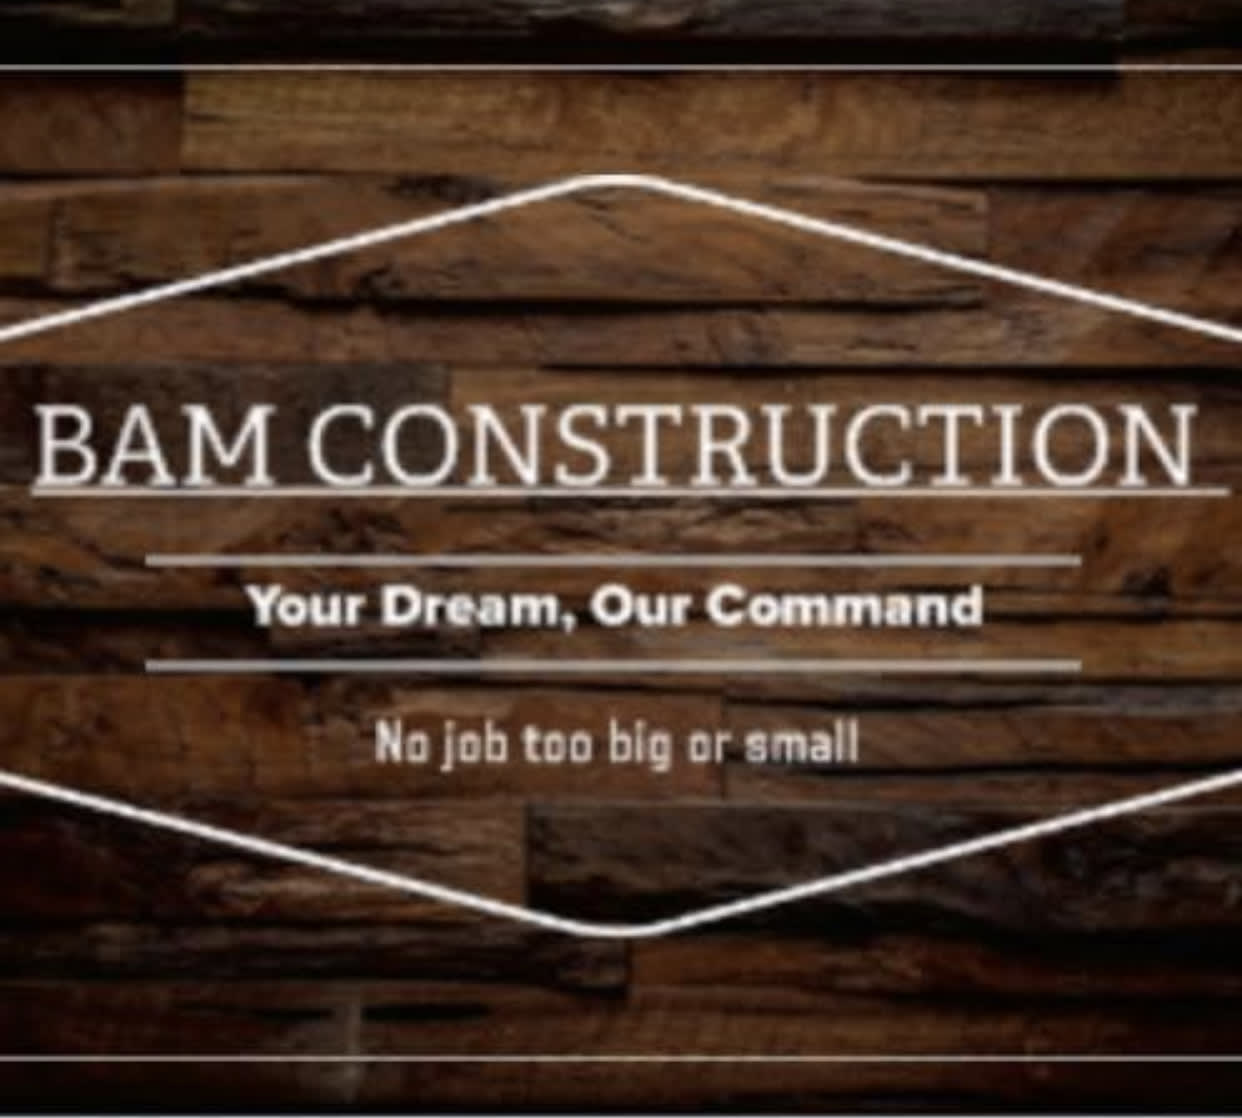 BAM Construction